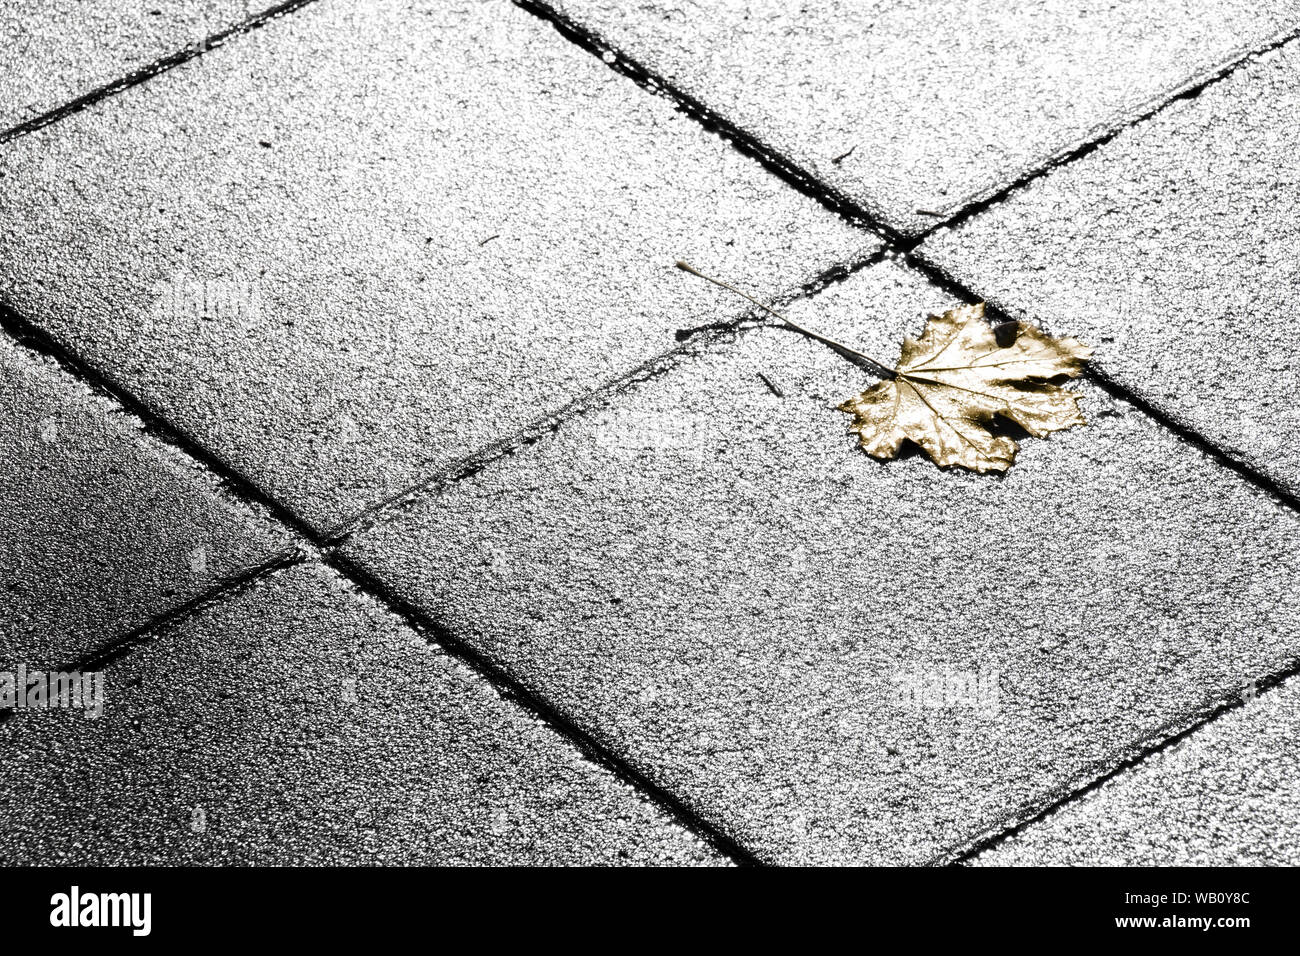 Golden gefallen Blatt auf der Straße in Schwarz und Weiß Stockfoto